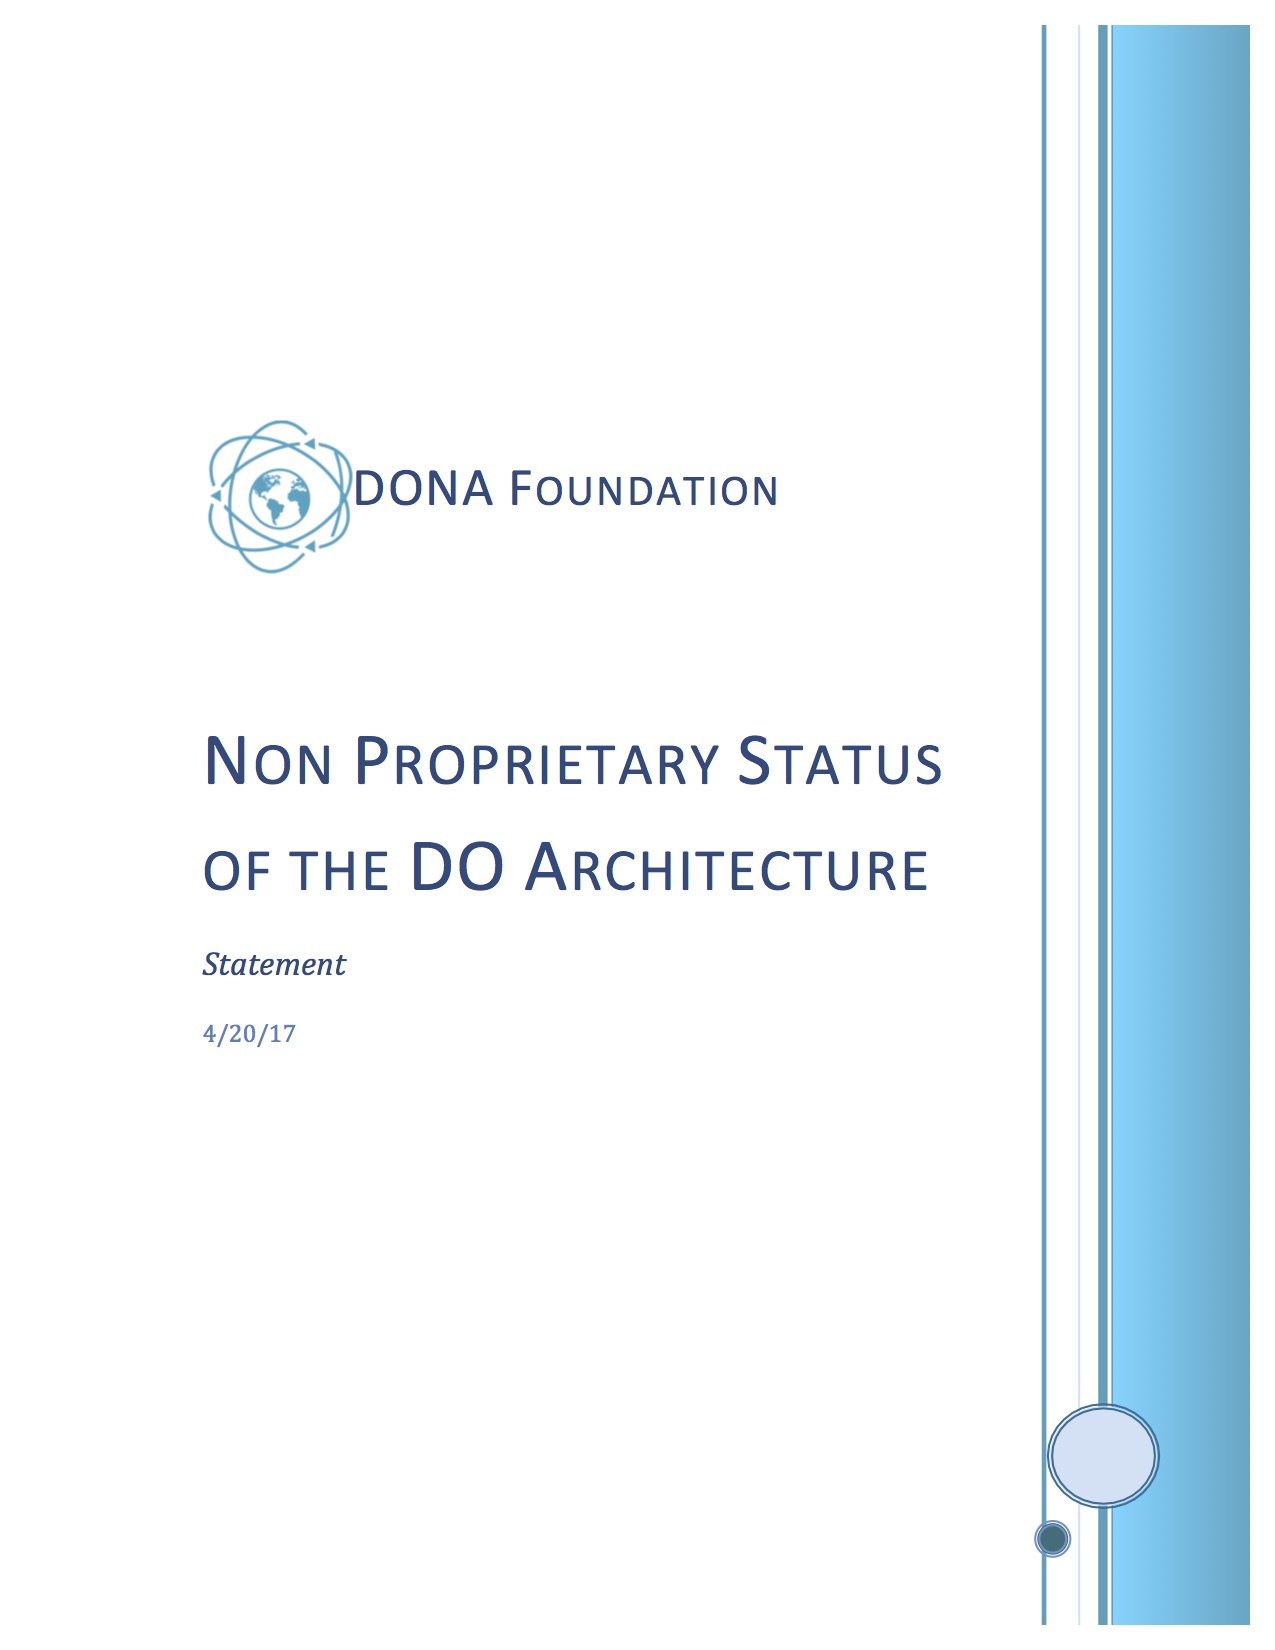  Non Proprietary Status of the DO Architecture